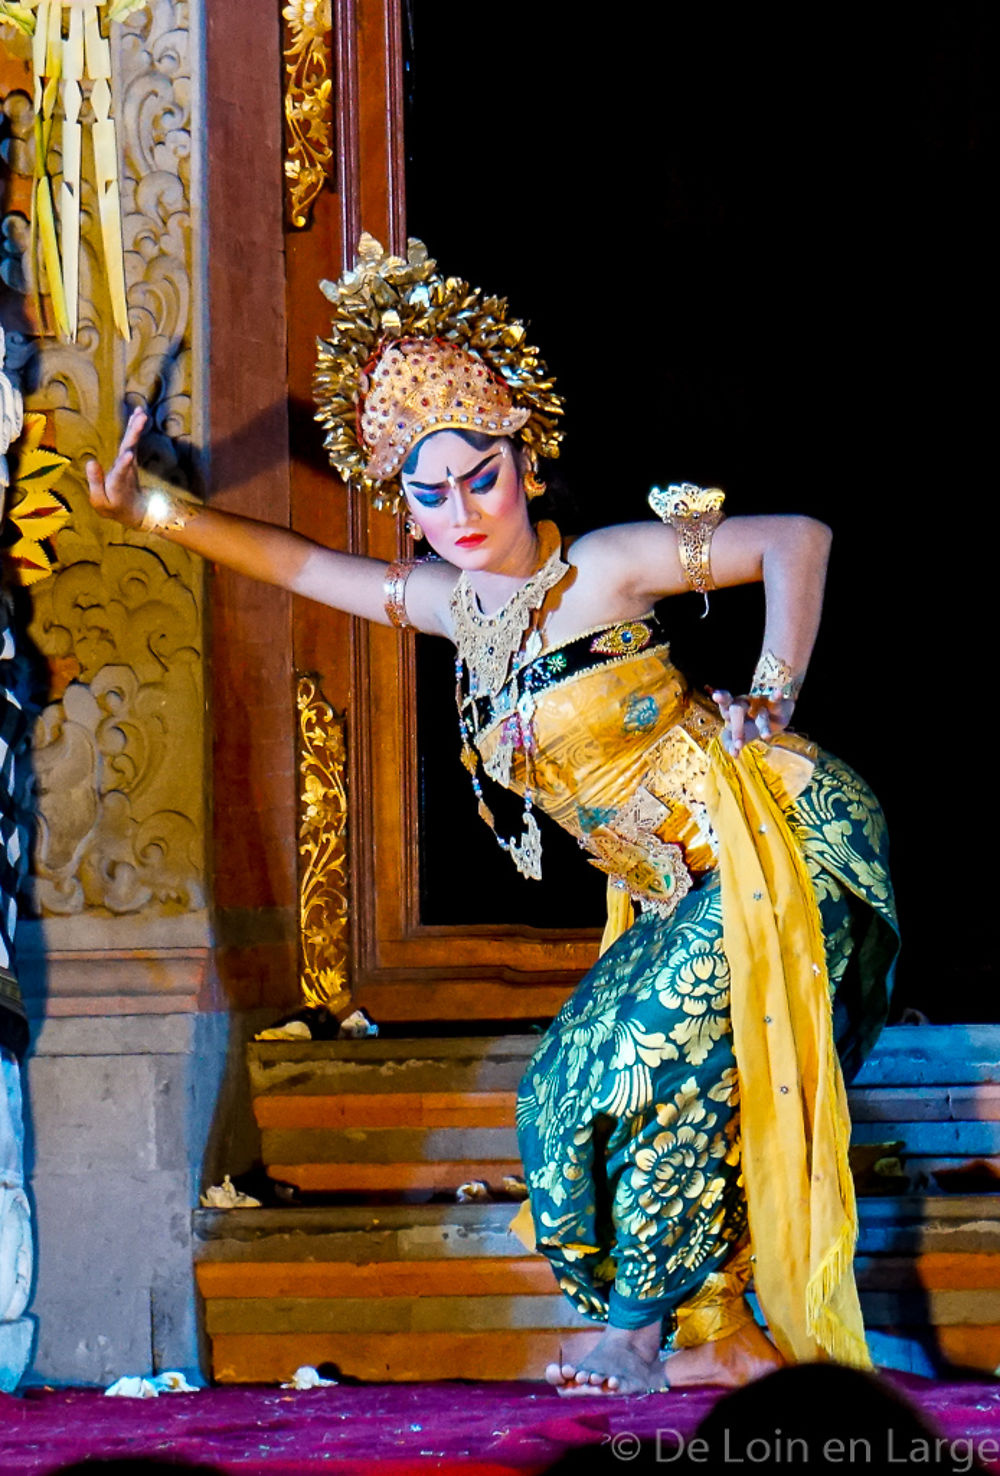 Bali - 3 semaines - Ubud - Pemuteran - Munduk - Amed - Gili Meno - Jimbaran - tfab